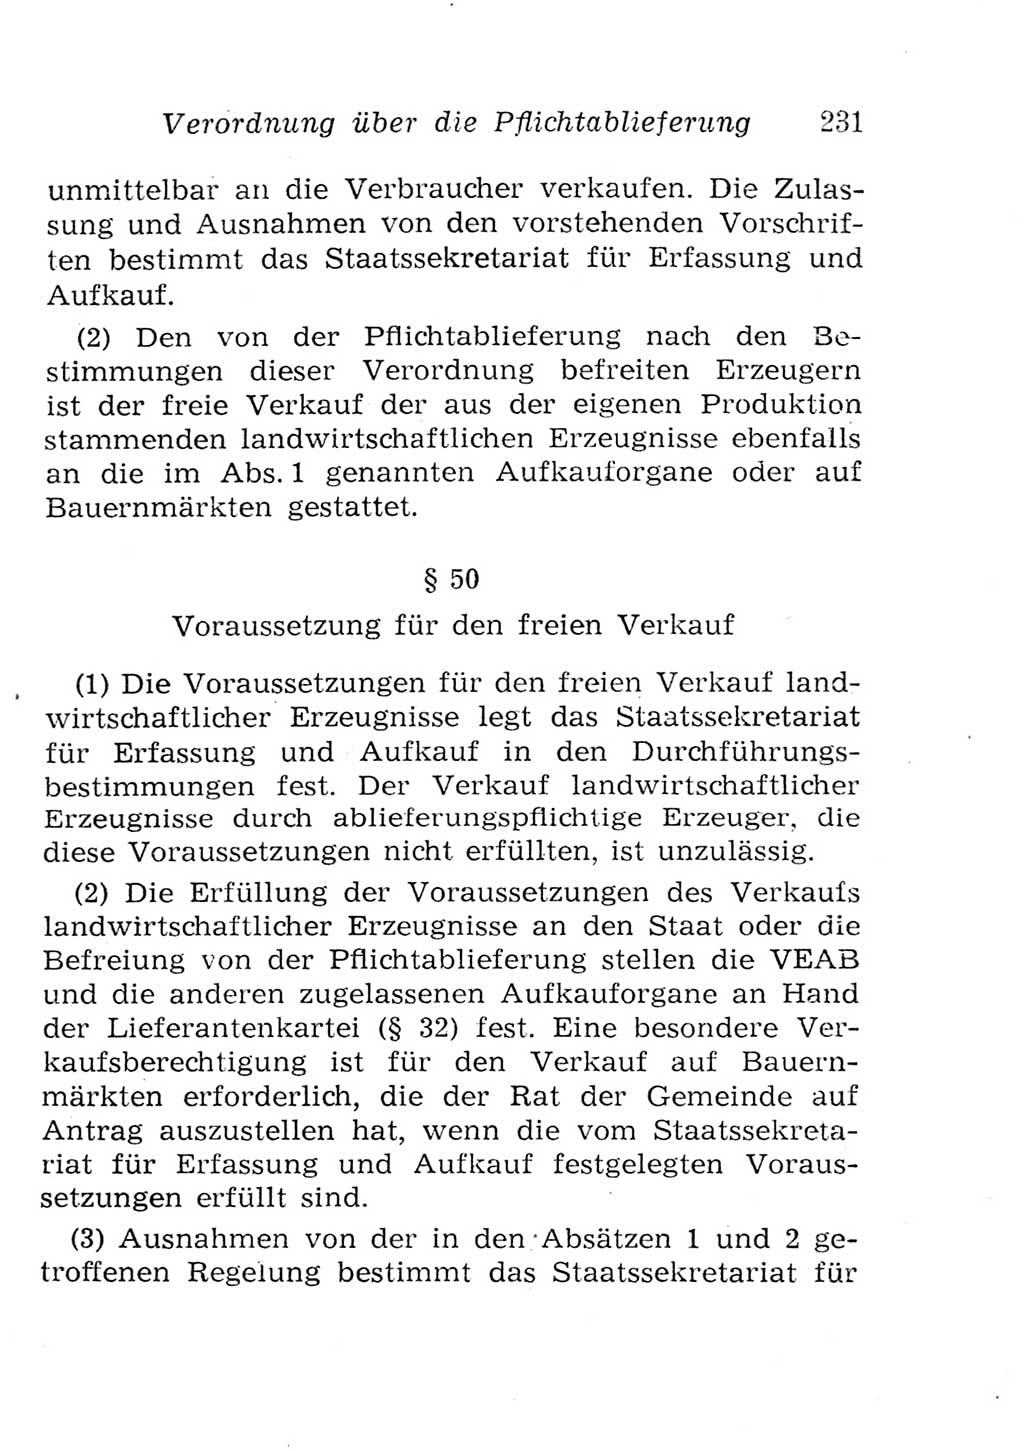 Strafgesetzbuch (StGB) und andere Strafgesetze [Deutsche Demokratische Republik (DDR)] 1957, Seite 231 (StGB Strafges. DDR 1957, S. 231)